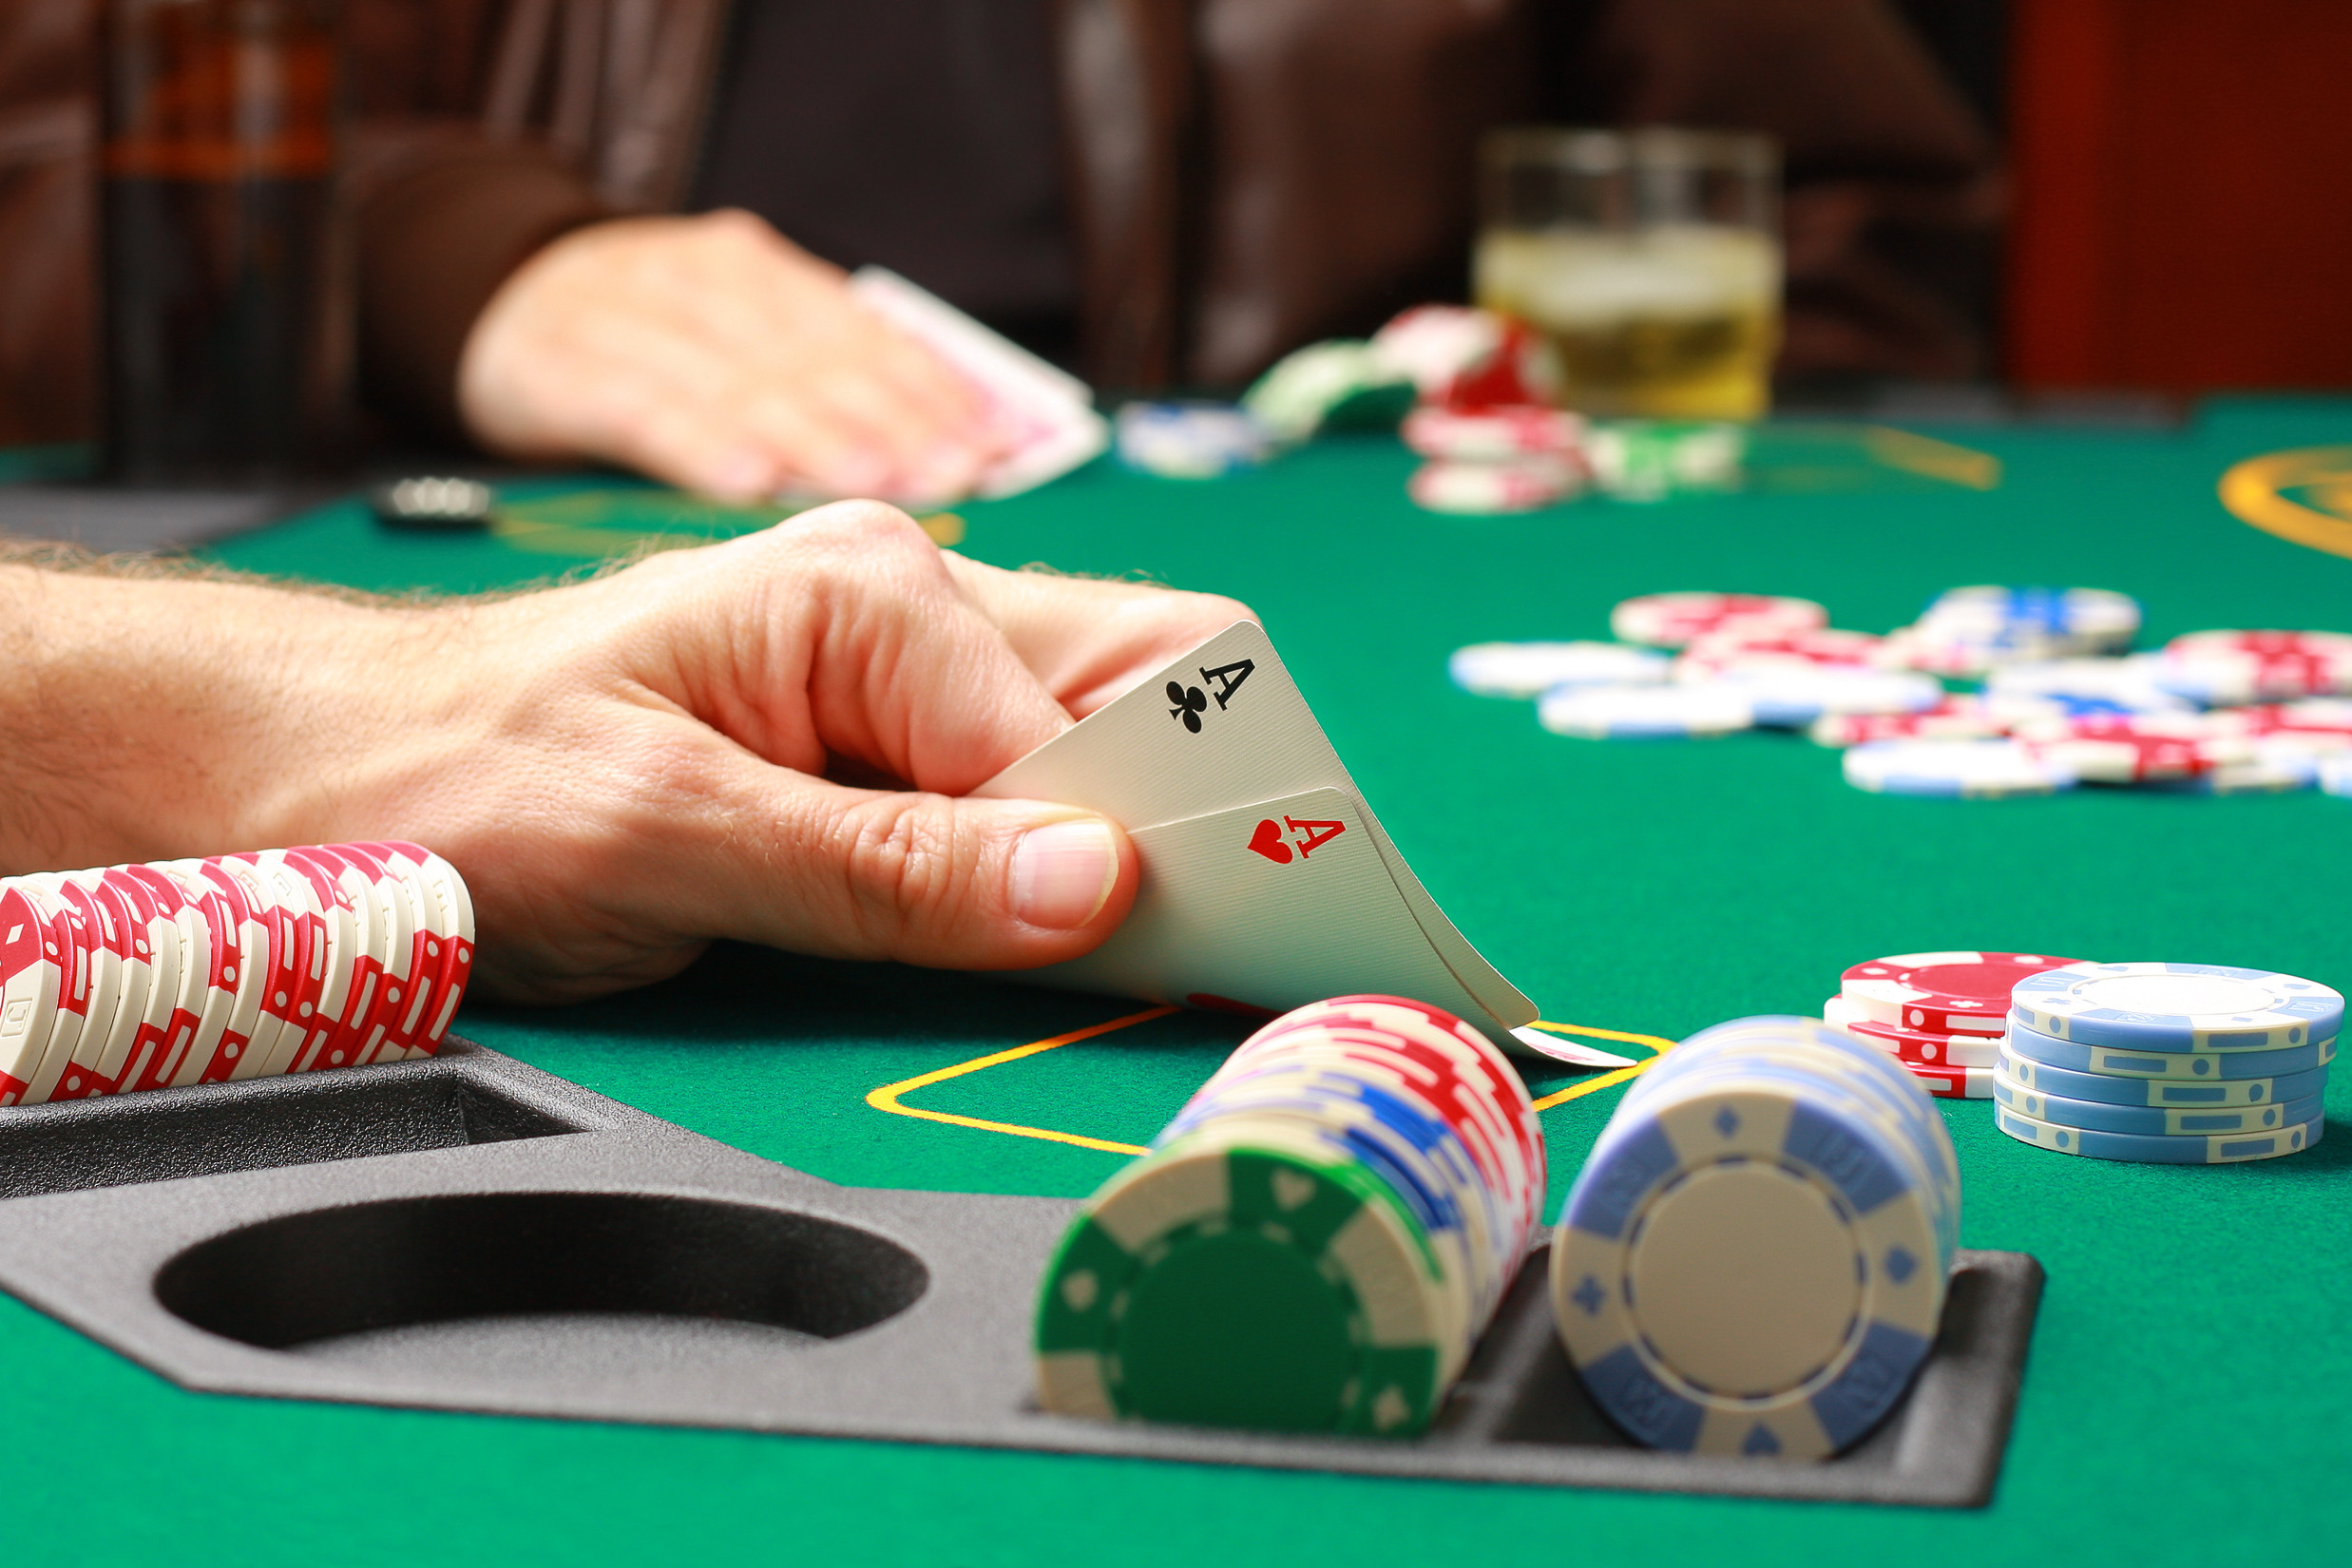 карманные пары, покер, префол,  Сет является злейшим врагом карманным тузам стратегия, карточные игры, игра, обучение, игра в покер, обучение, советы для начинающих, карманные тузы, выигрыш, победа, стили игры, бэд биты, all-in